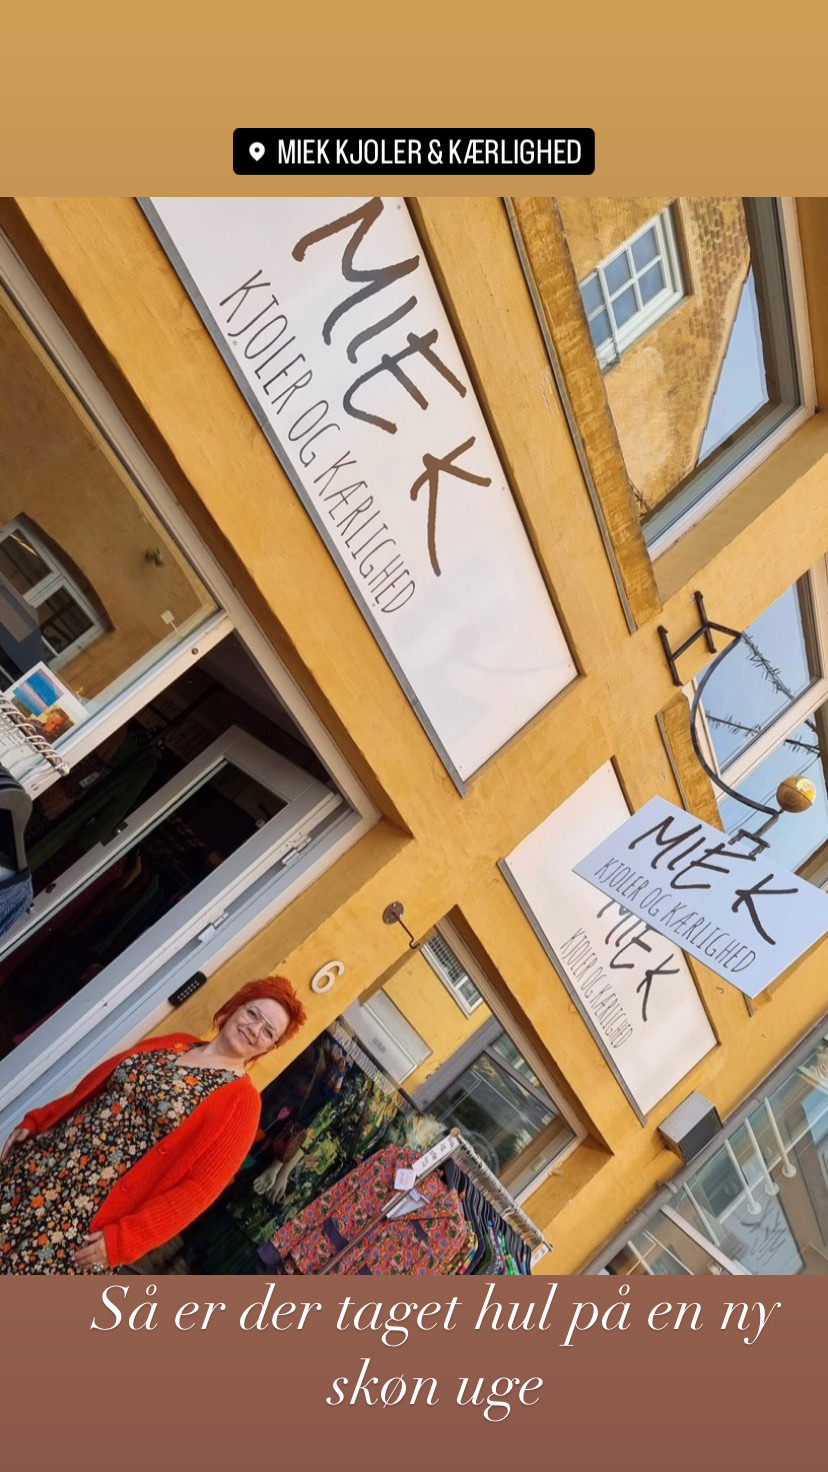 Afspejling Hvor fint at opfinde Mie Kierkegaard spreder kjole-kærlighed i butikkens nye rammer | VORES  Randers